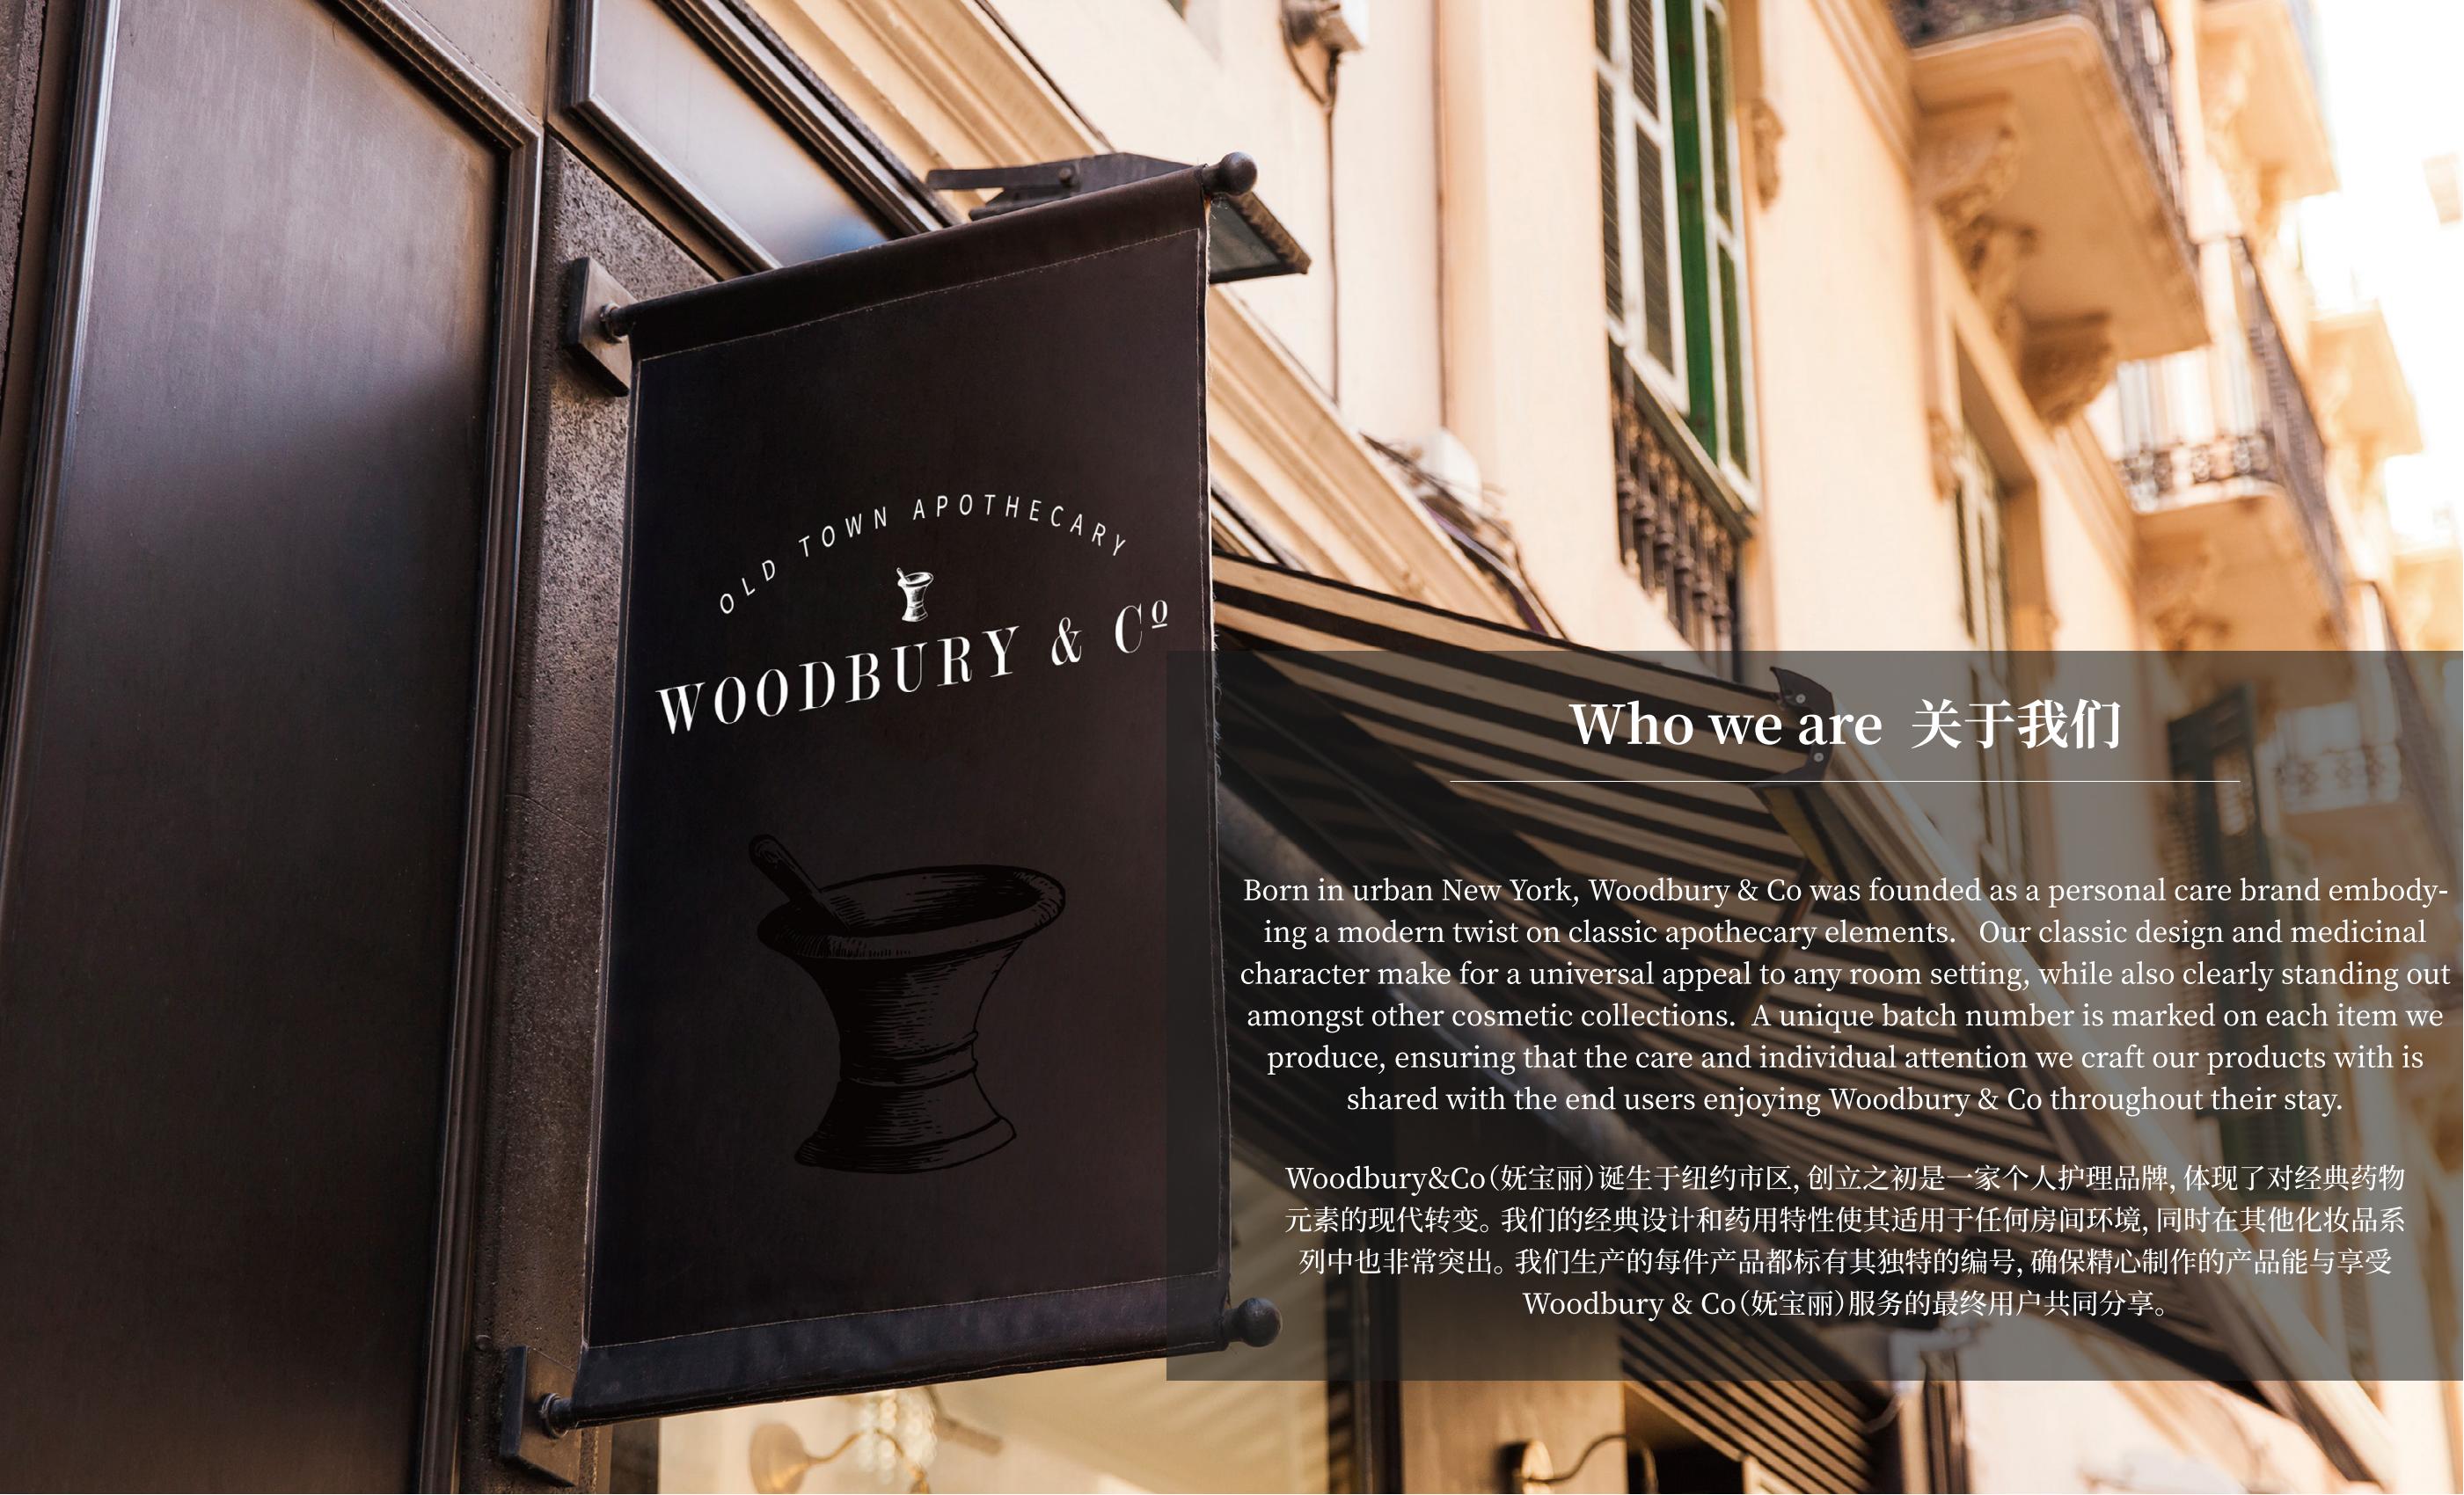 20230324-新版品牌图册 - Woodbury & Co (妩宝丽)品牌介绍+产品(1)_01.jpg